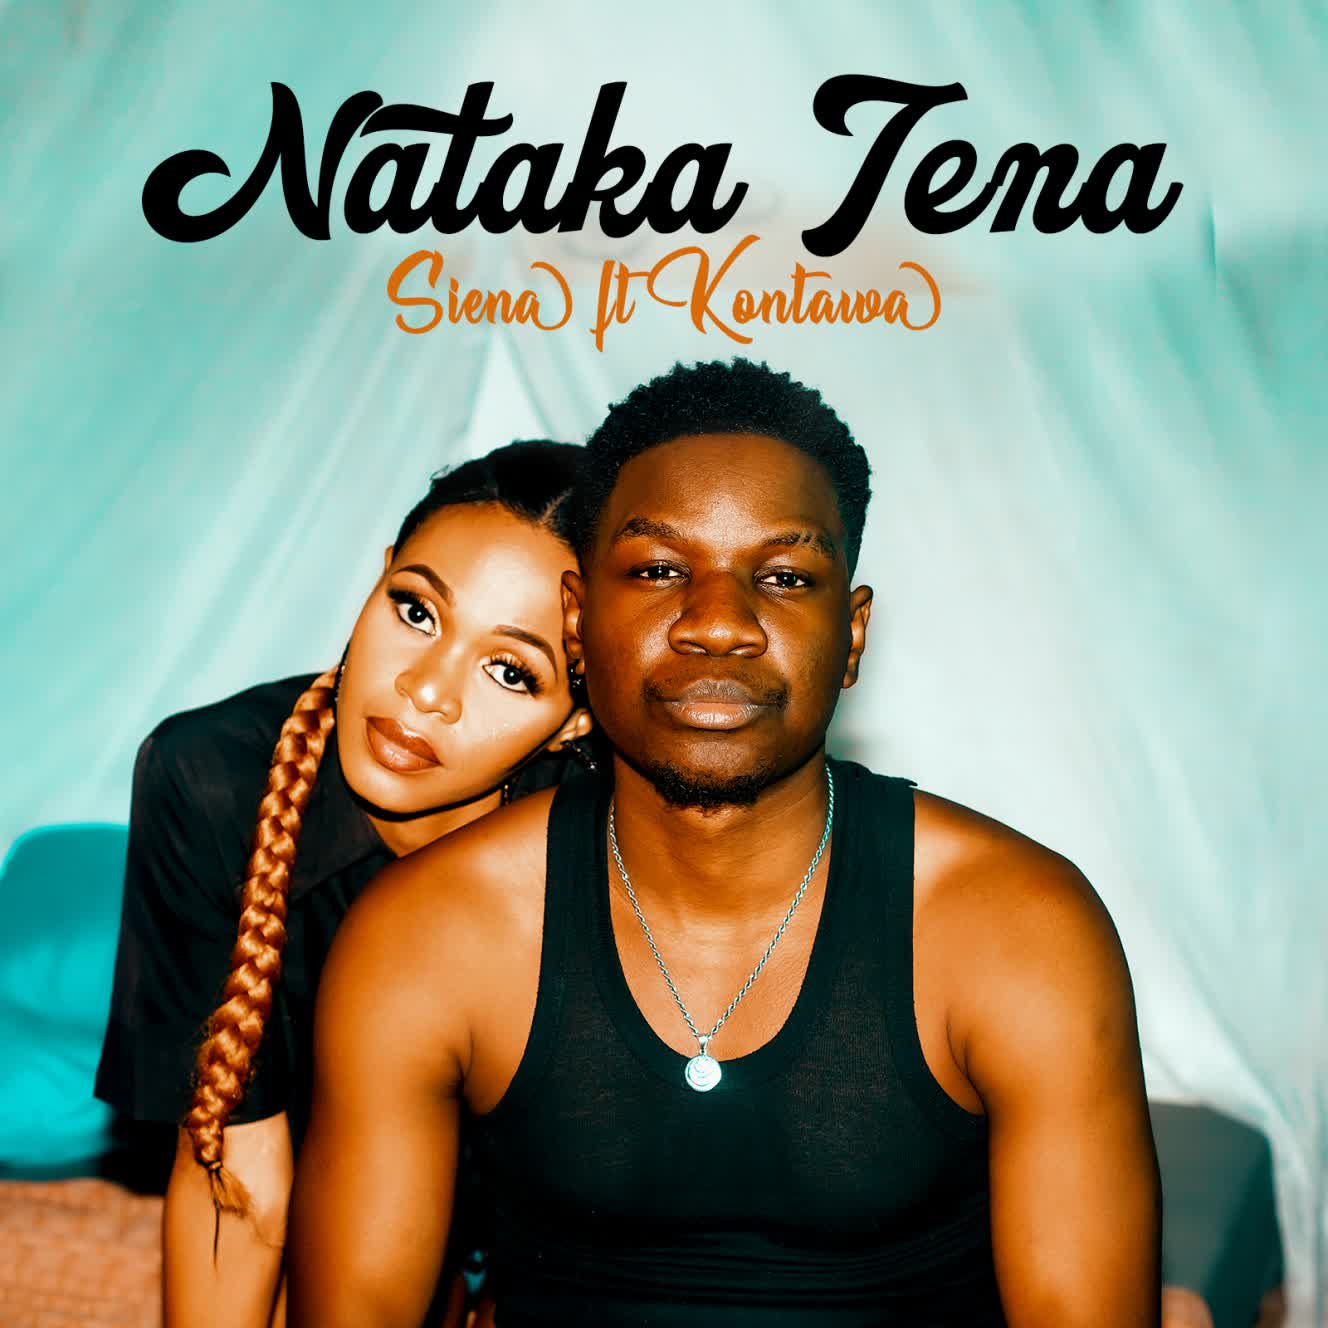 Download Audio | Siena Ft. Kontawa – Nataka Tena